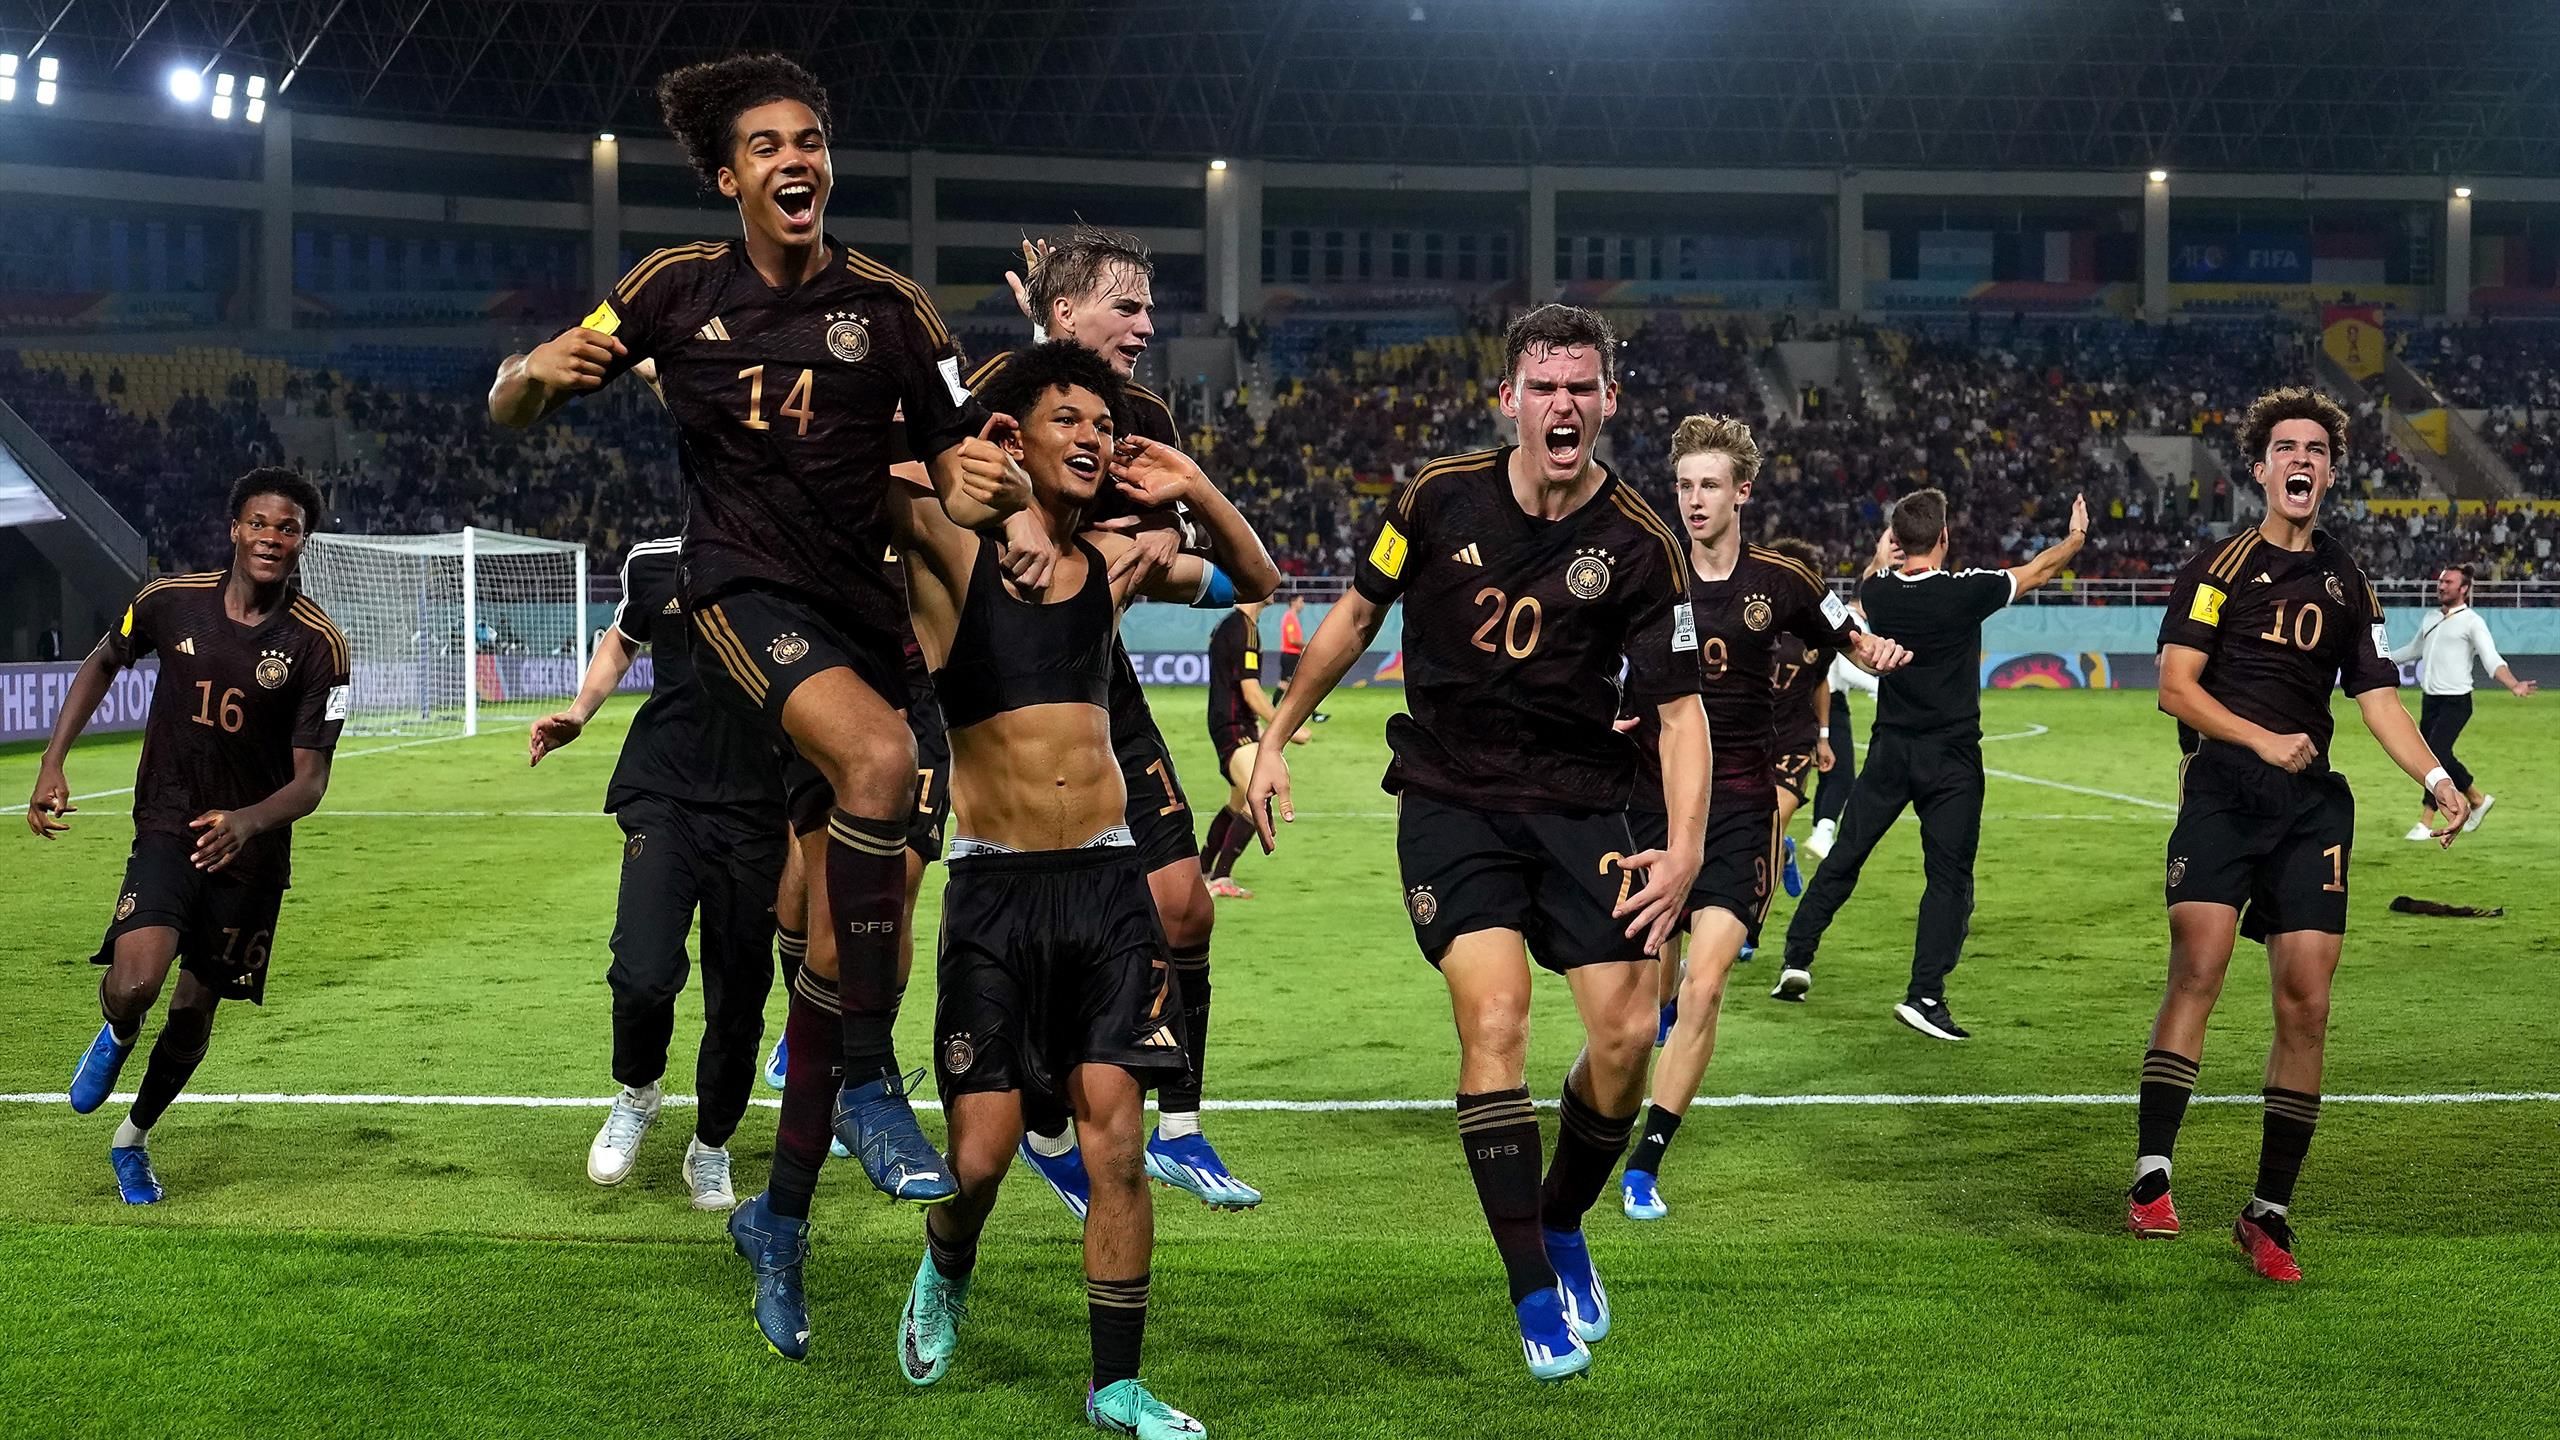 Piala Dunia U-17: Bersejarah!  Jerman melaju ke final dengan mengalahkan Argentina melalui adu penalti